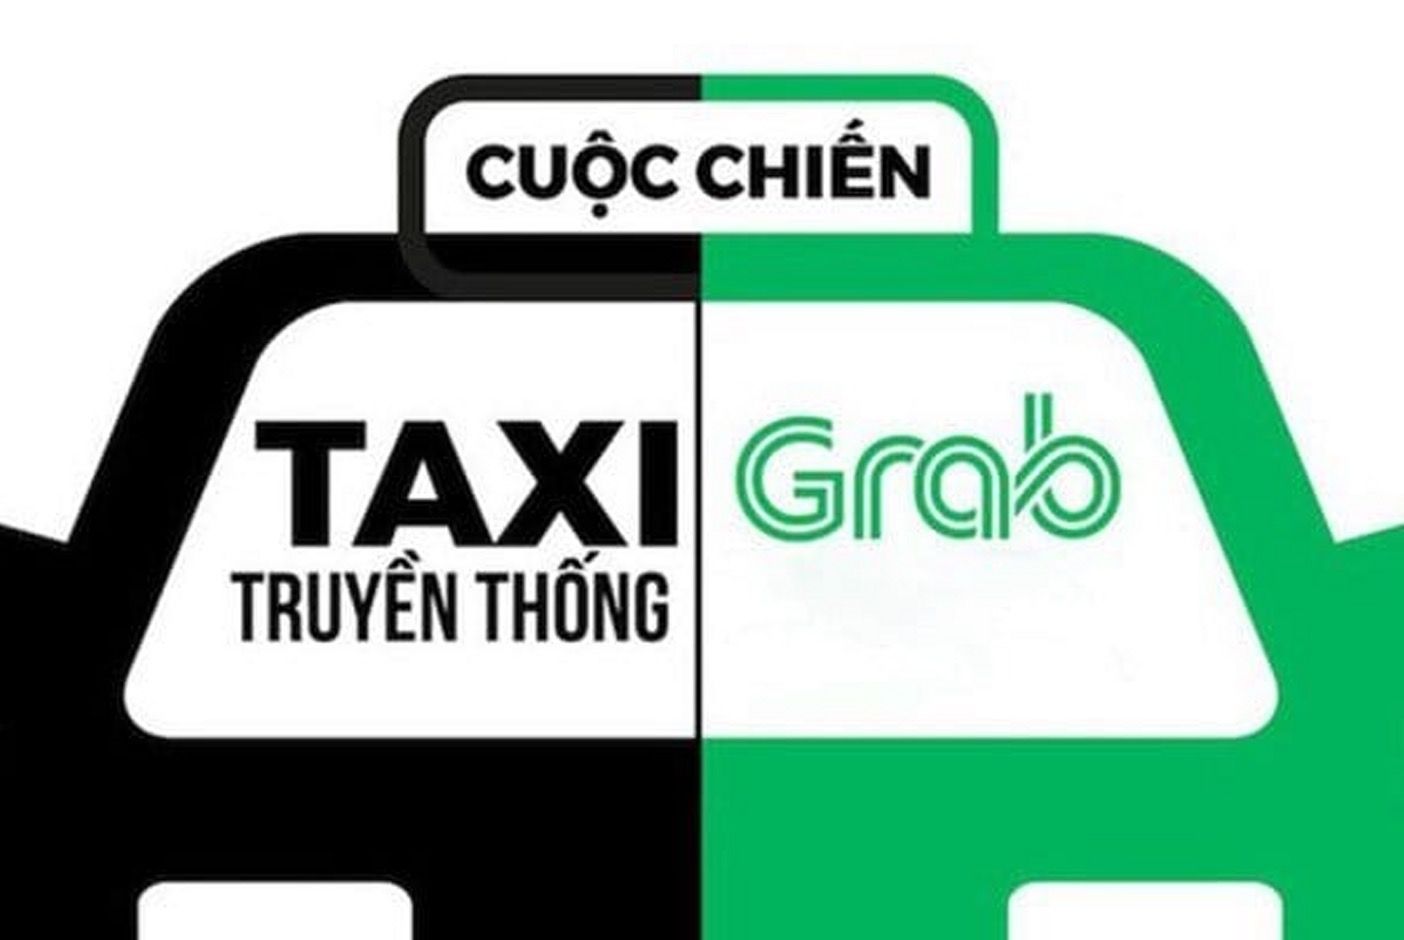 Phần thắng trong cuộc chiến với Taxi truyền thống đang nghiêng về phía Uber hay Grab nhờ ứng dụng chuyển đổi số hoạt động Marketing